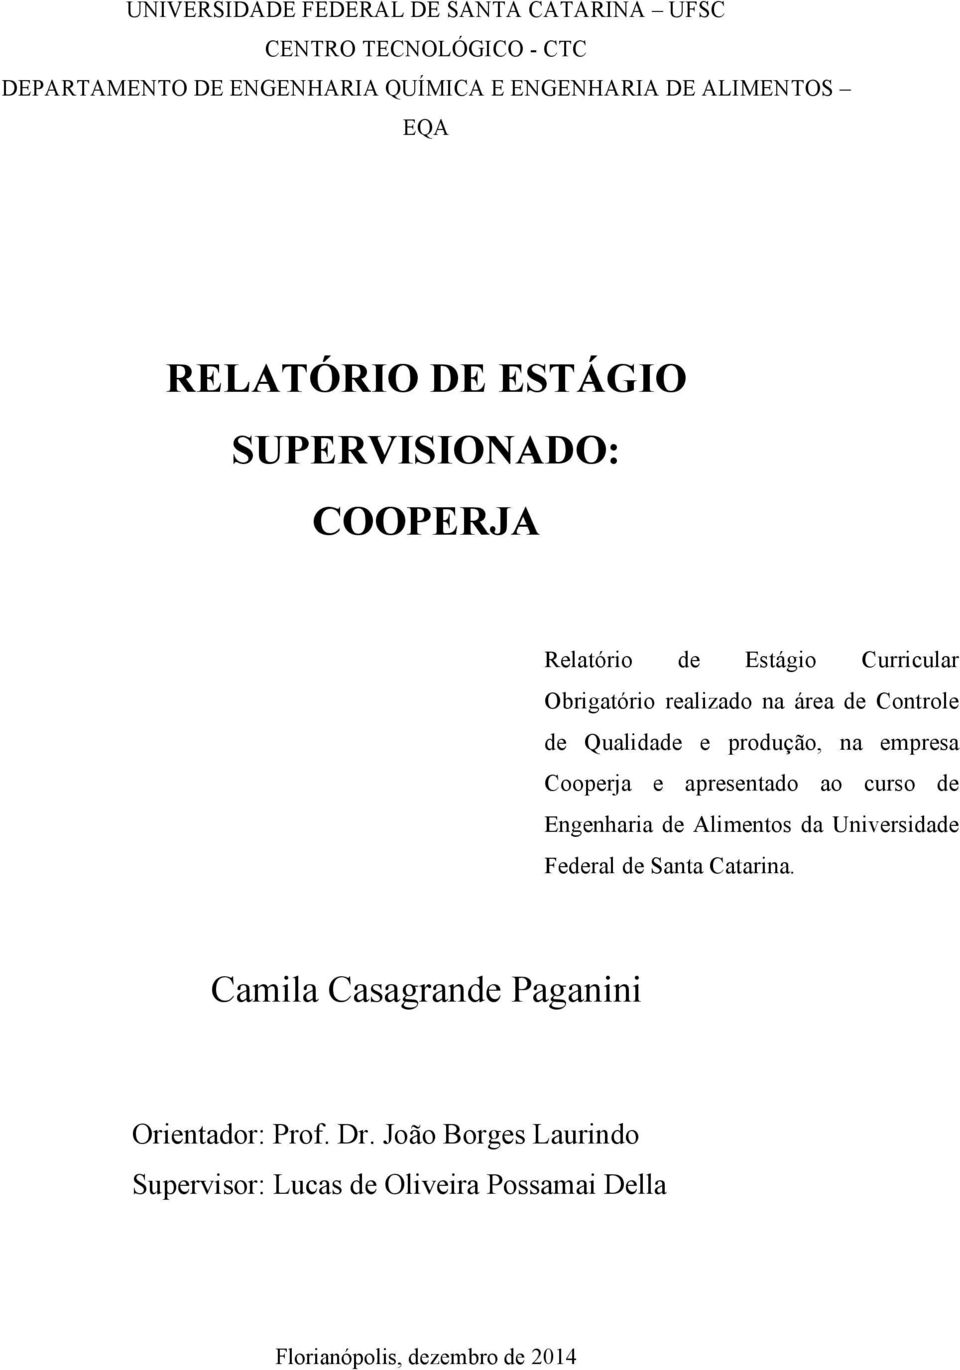 produção, na empresa Cooperja e apresentado ao curso de Engenharia de Alimentos da Universidade Federal de Santa Catarina.